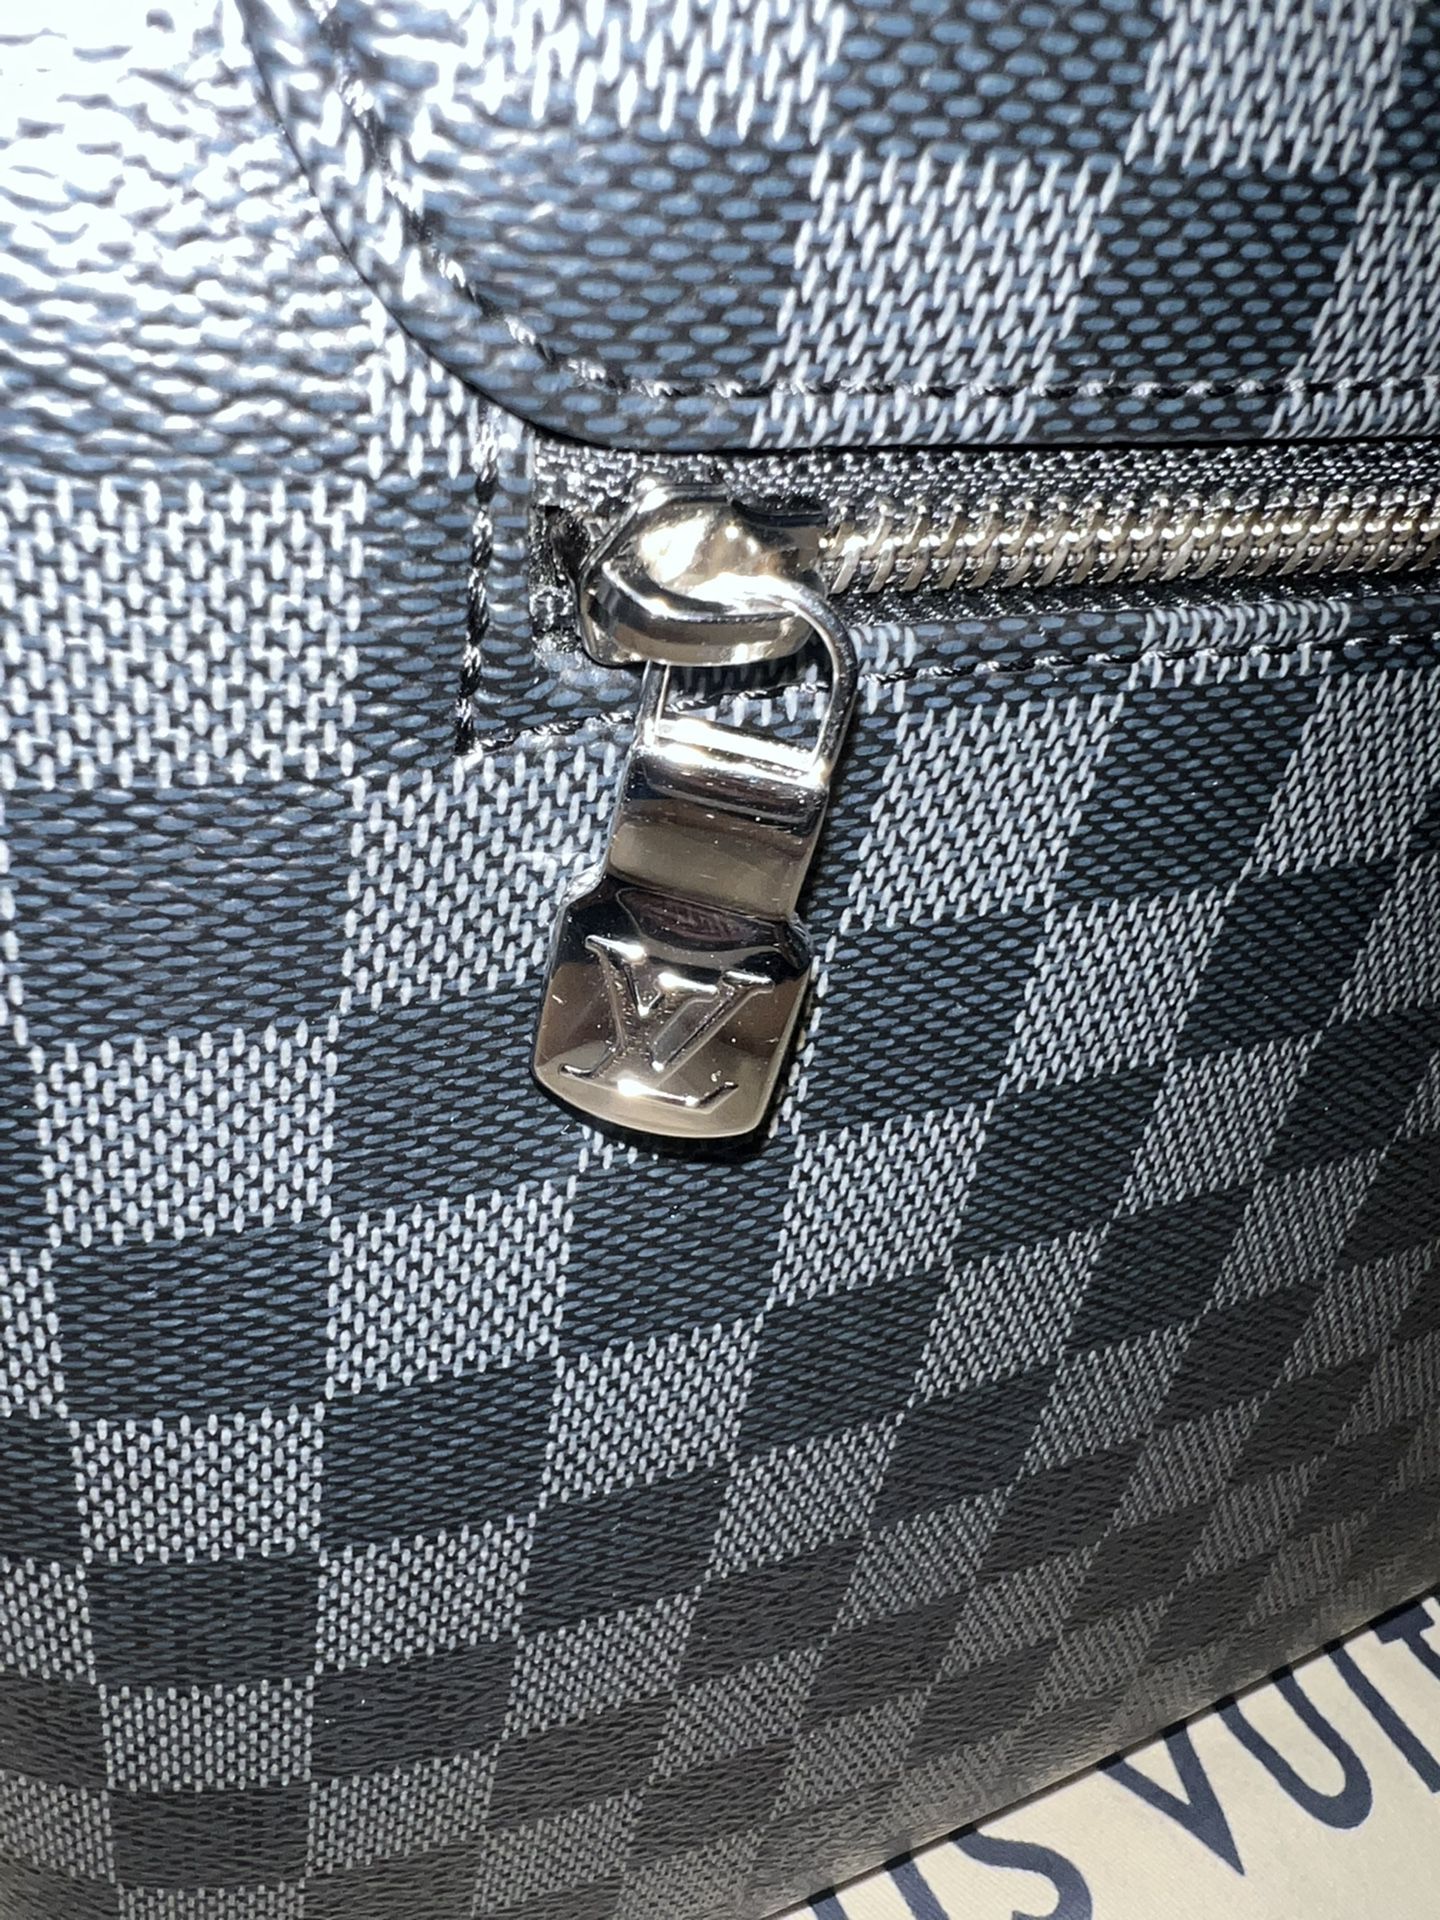 Louis Vuitton Messenger Bag - District PM Damier Graphite (Men's/Unisex)  for Sale in Houston, TX - OfferUp